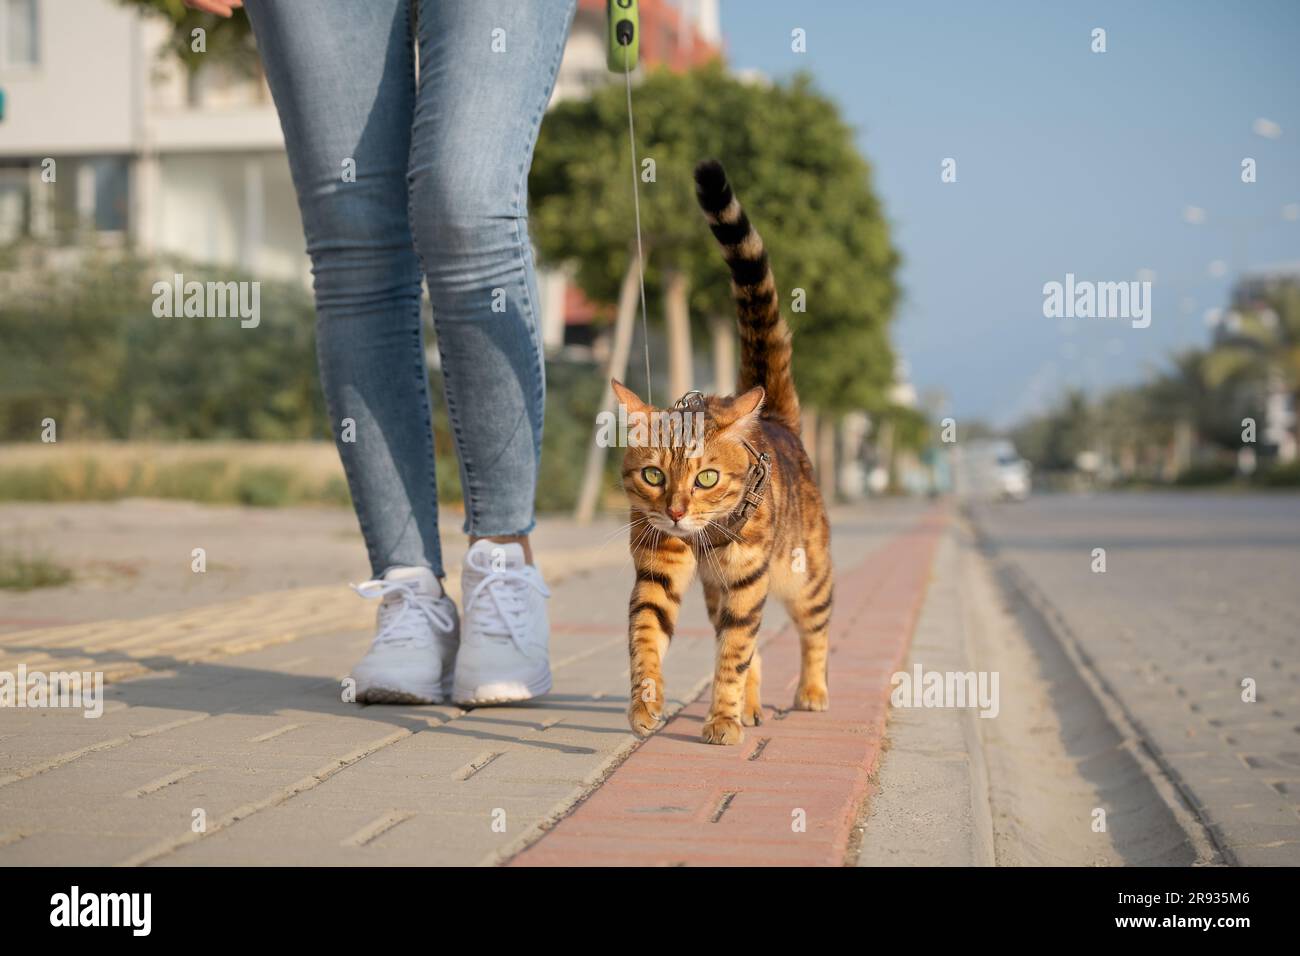 Un chat Bengale sur une laisse marche à côté d'une femme sur le trottoir. Marche avec un chat domestique à l'extérieur. Banque D'Images